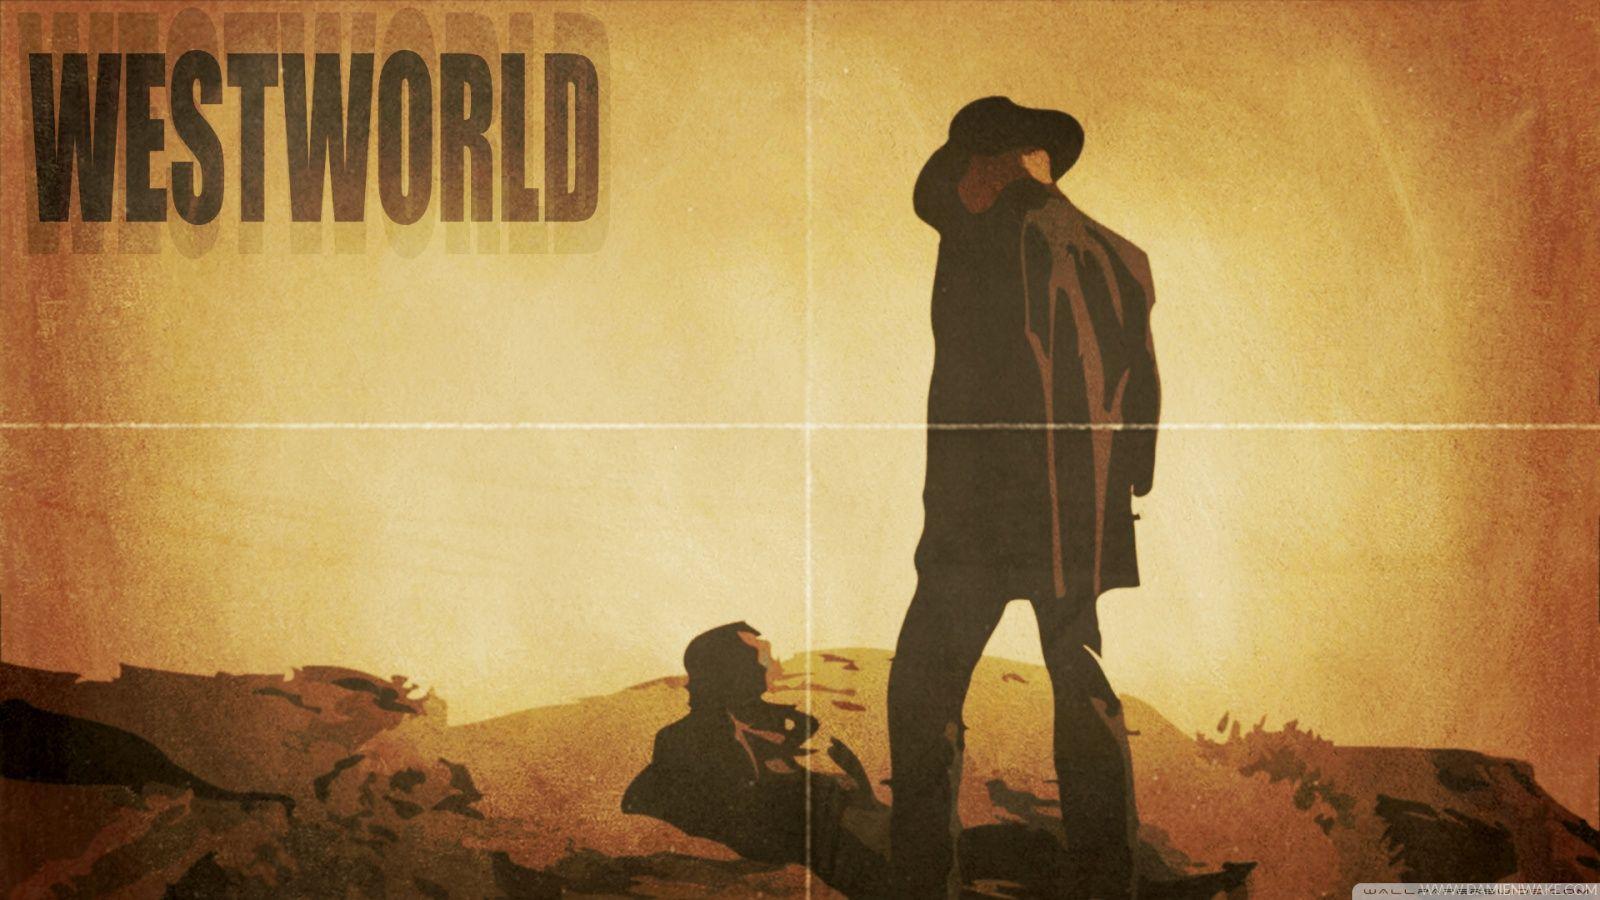 وست‌ورلد (Westworld)